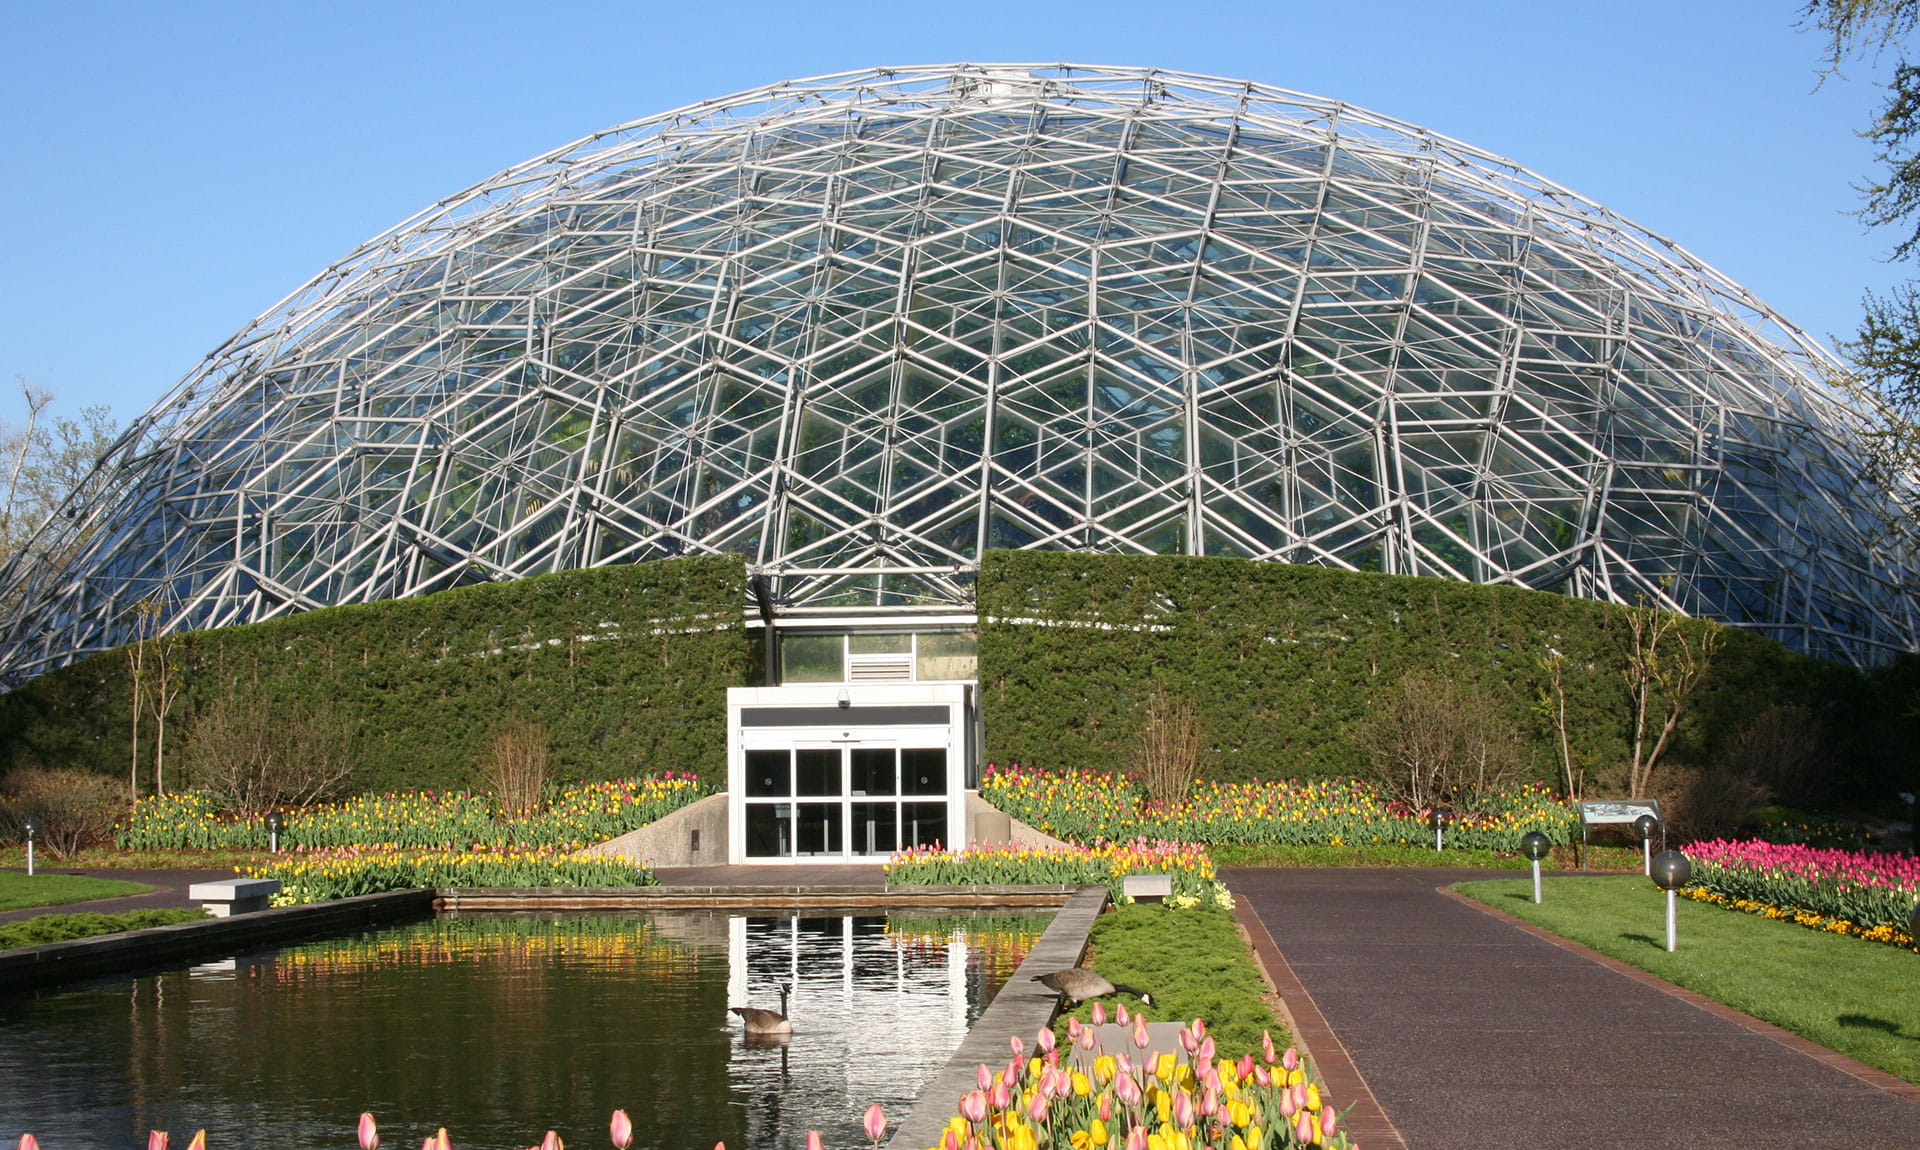 St. Louis Botanical Gardens